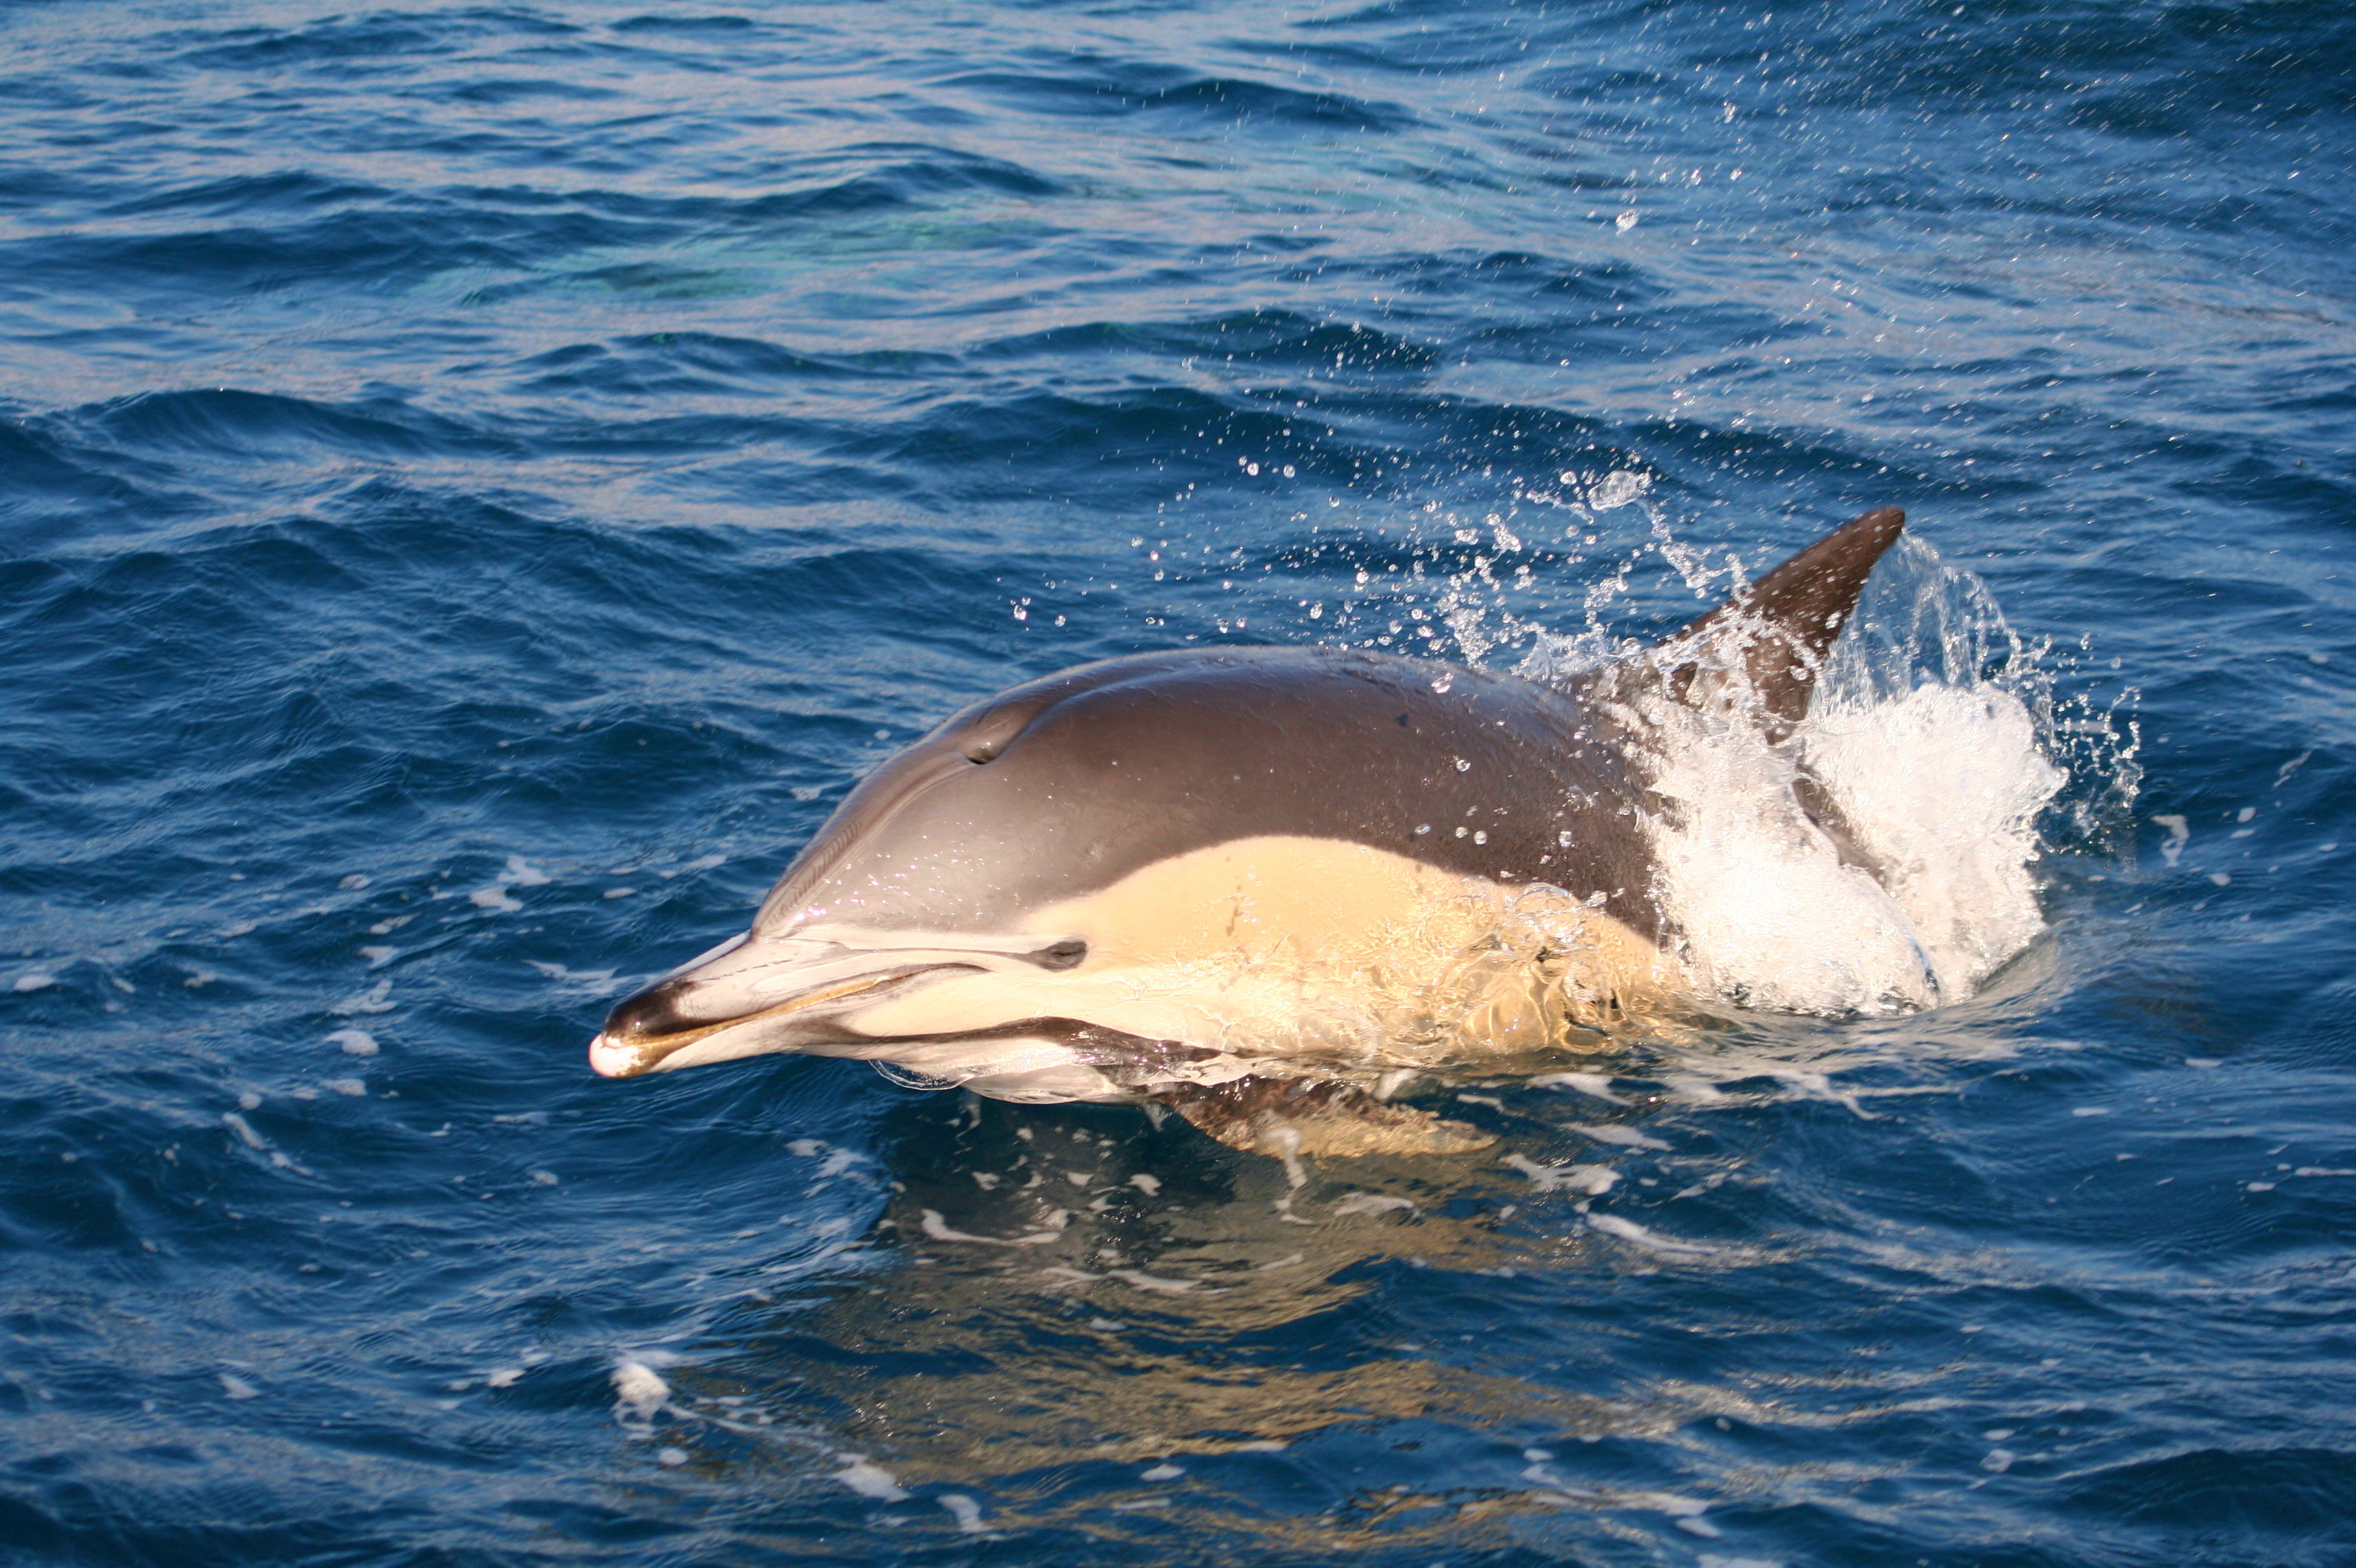 Avistameinto de Delfín común en Tarifa